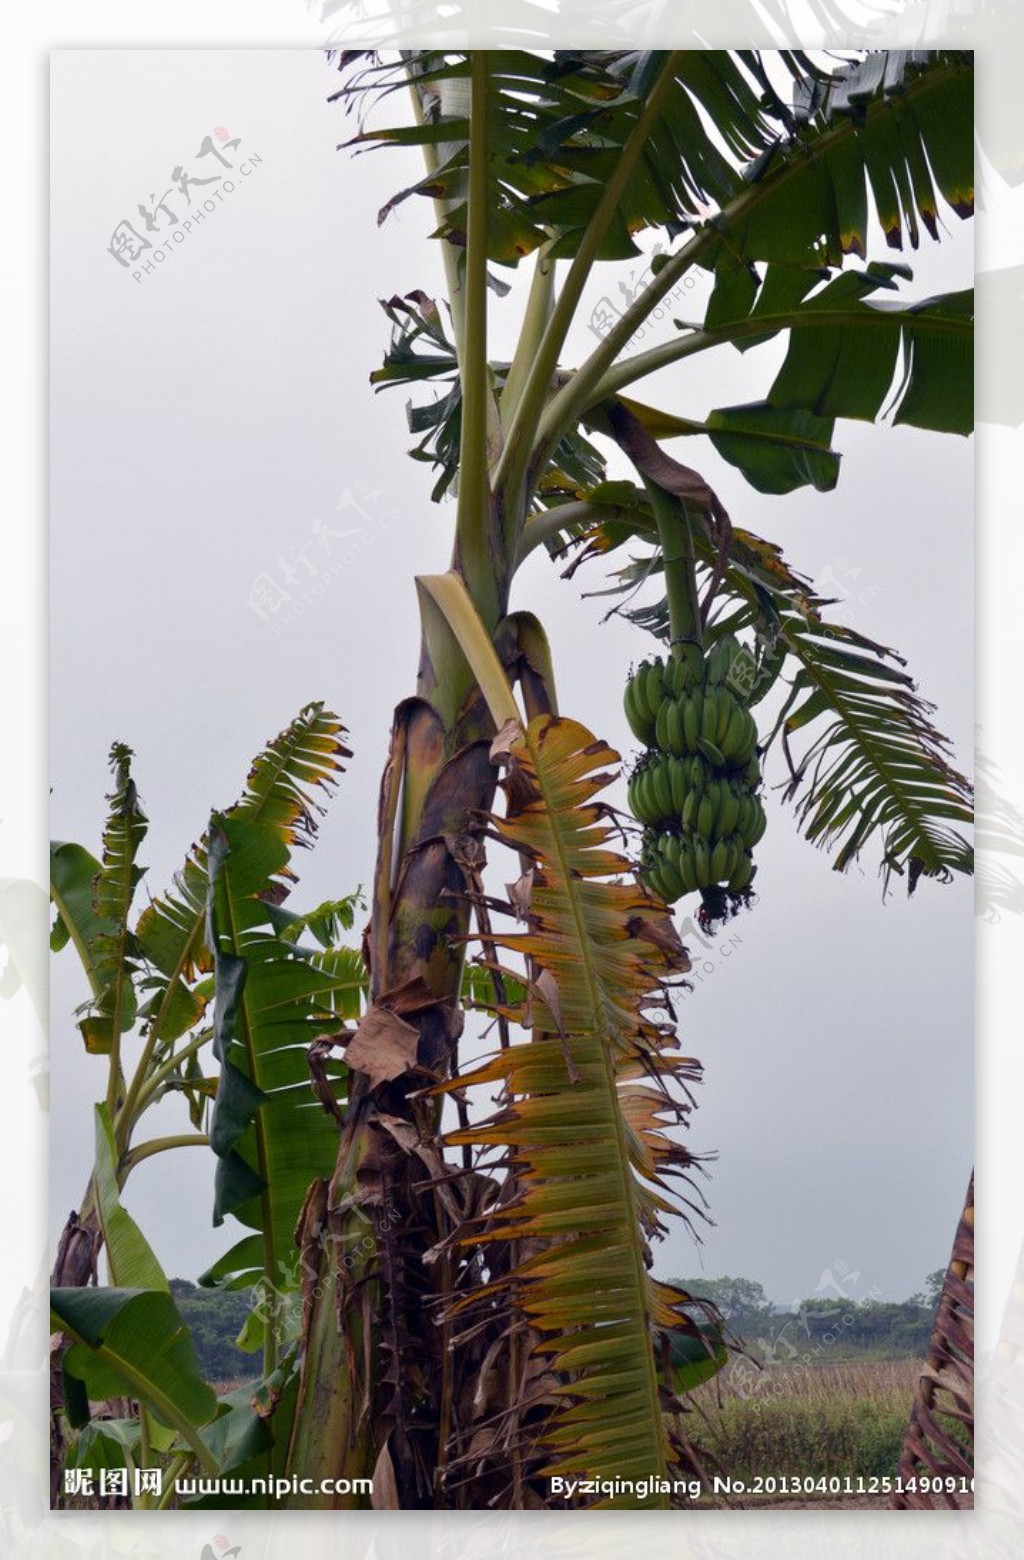 香蕉香蕉林香蕉树图片